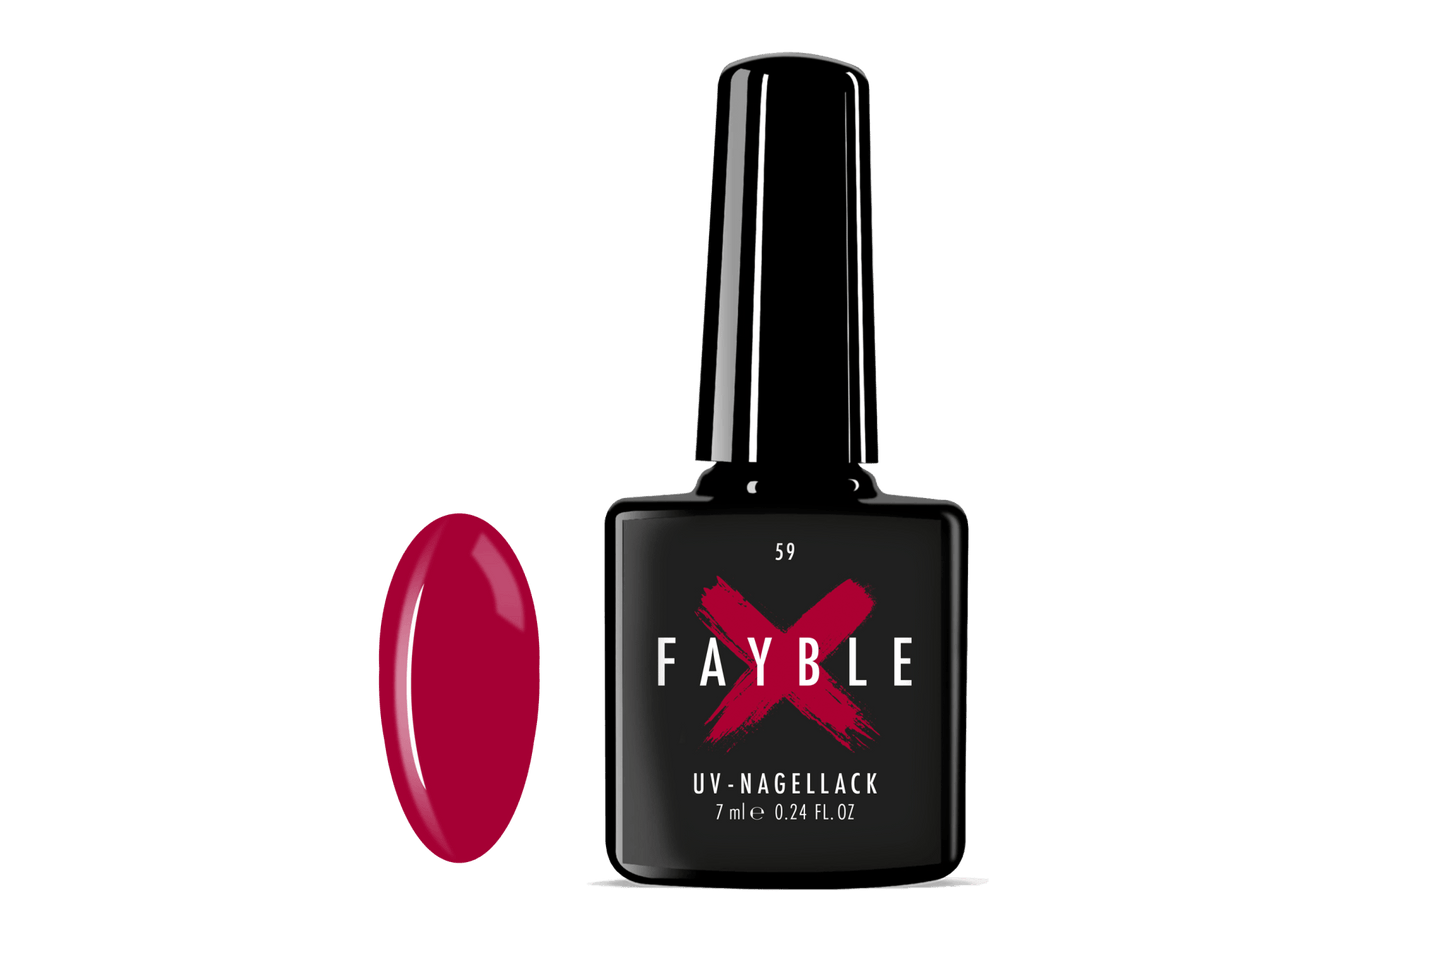 FAYBLE | UV-Nagellack Nr. 59 - FAYBLE